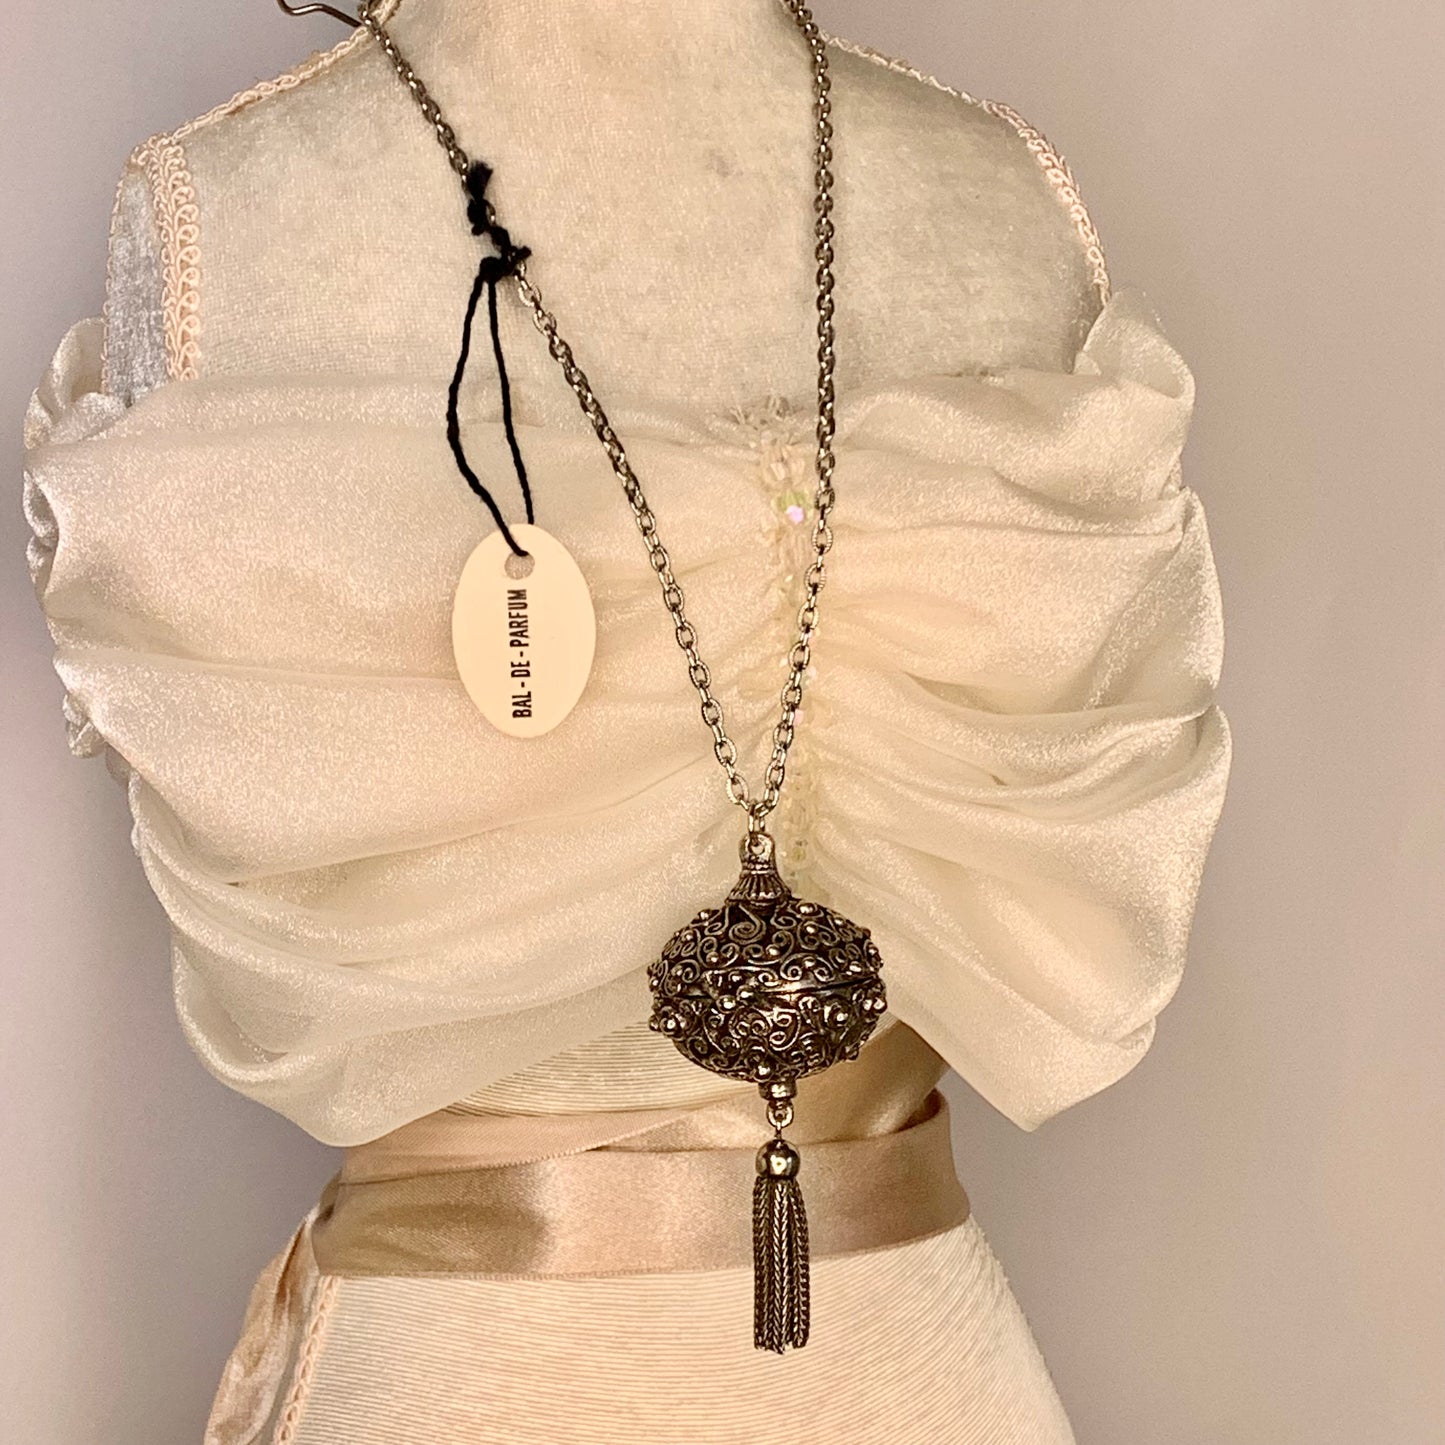 A vintage Florenza Bal-de-Parfum perfume necklace with tags.